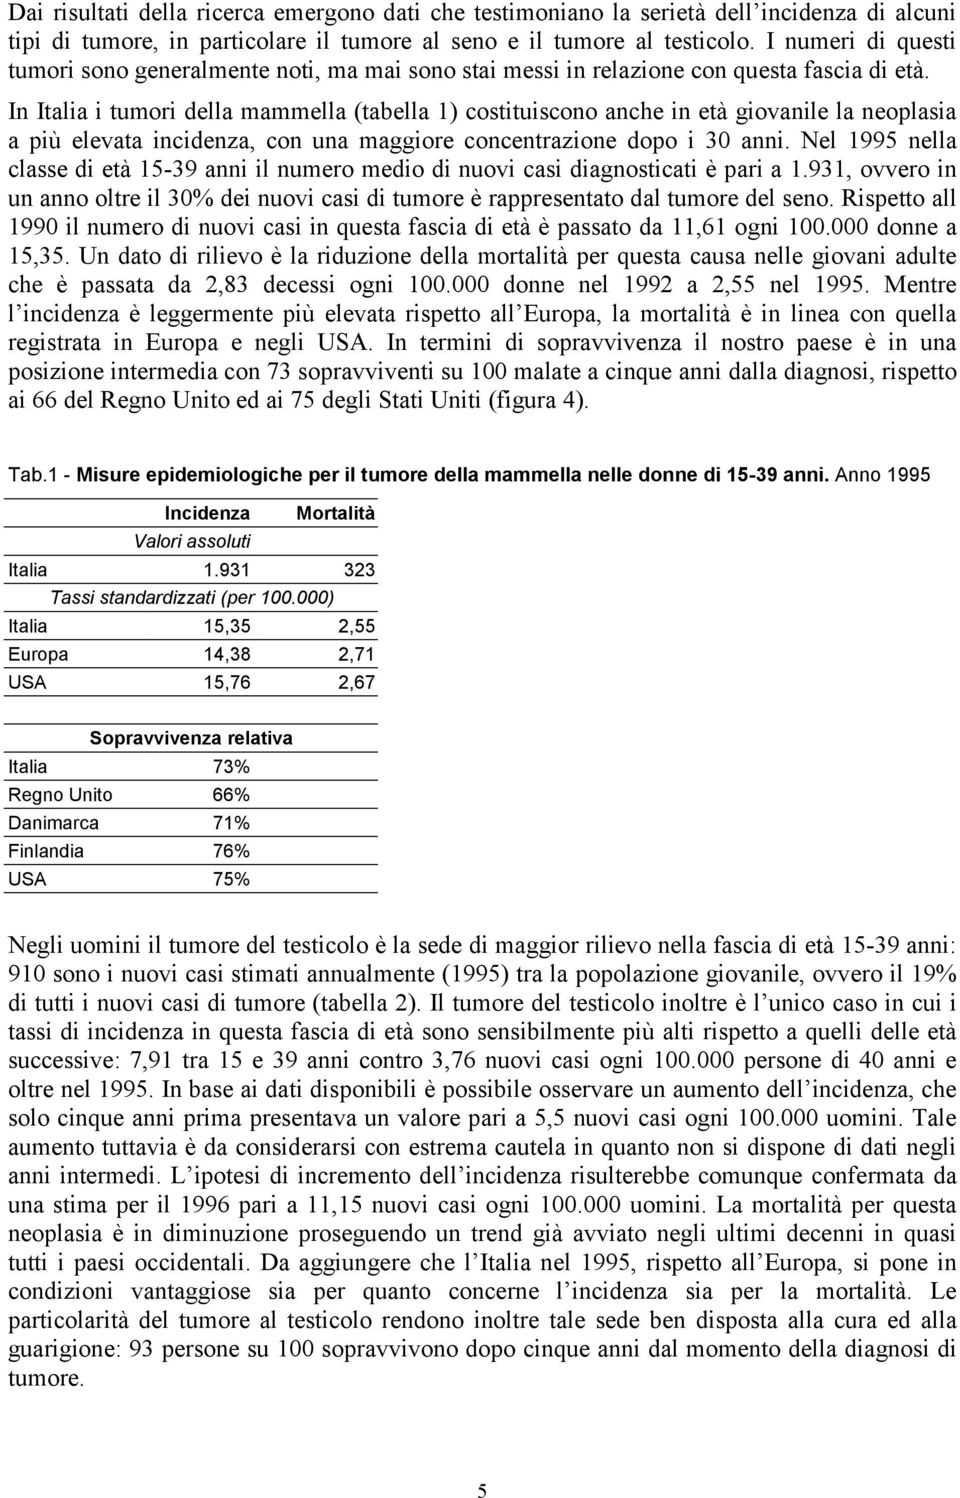 In Italia i tumori della mammella (tabella 1) costituiscono anche in età giovanile la neoplasia a più elevata incidenza, con una maggiore concentrazione dopo i 30 anni.